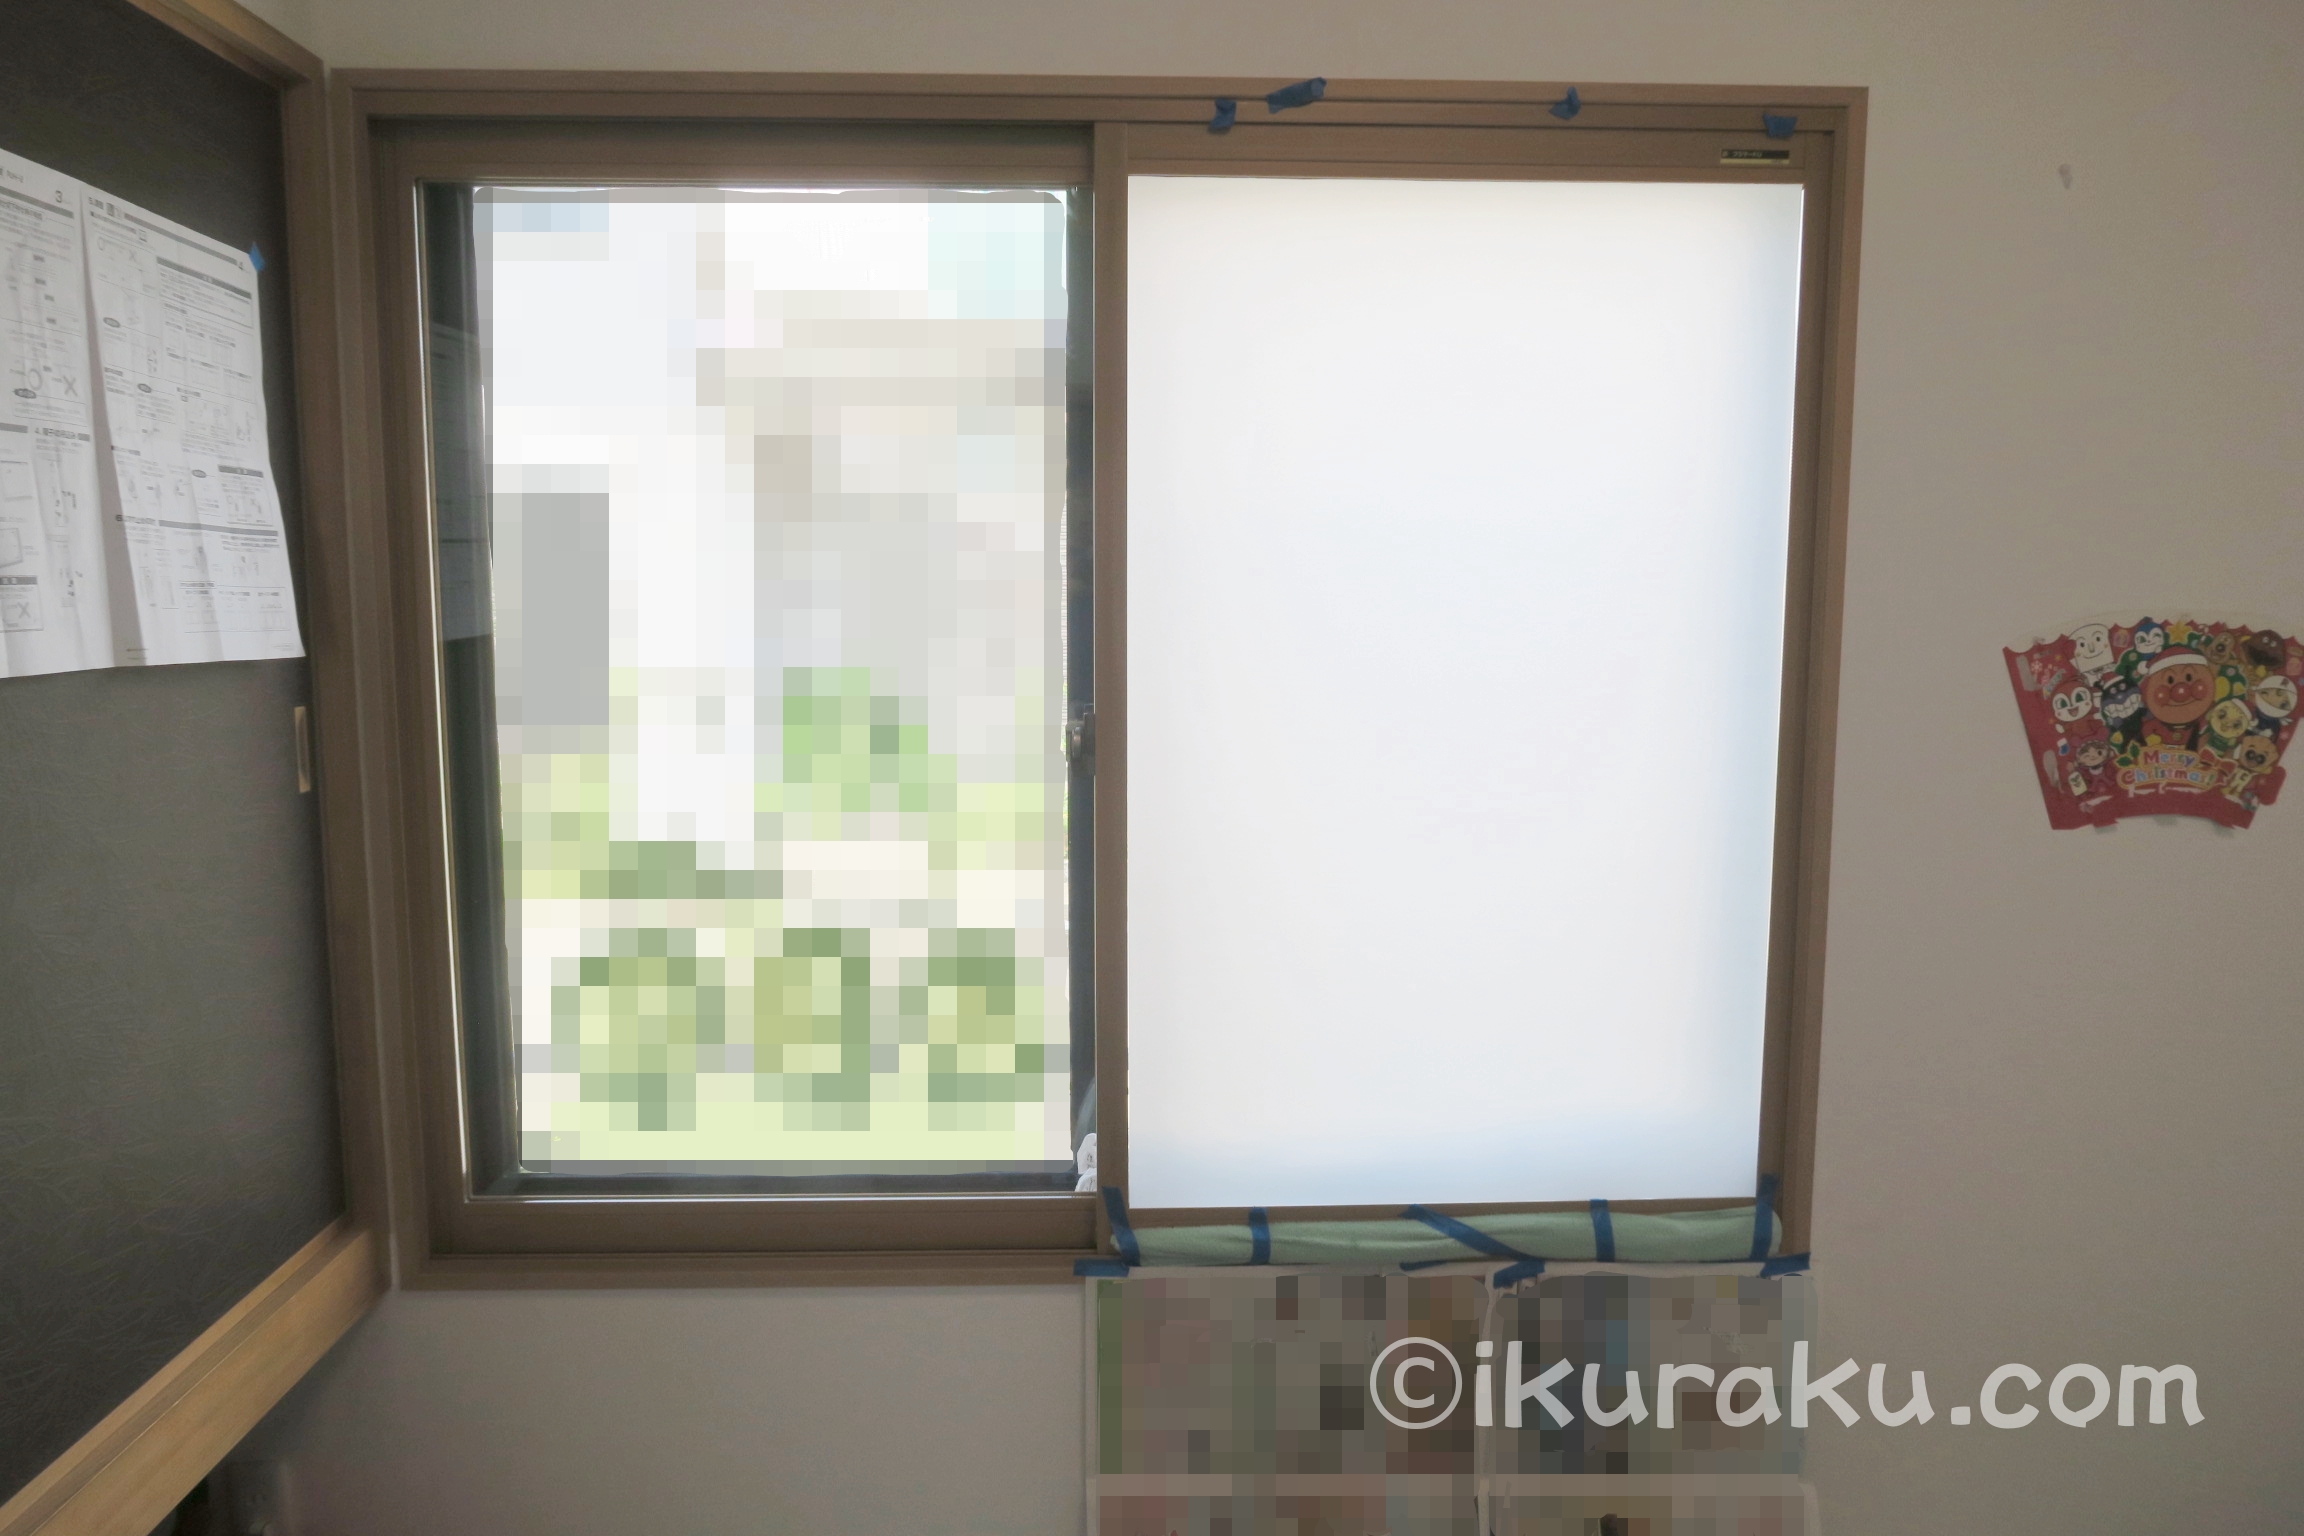 DUOFIRE 窓用フィルムめかくしシートを貼った窓と張っていない窓の見える風景の比較